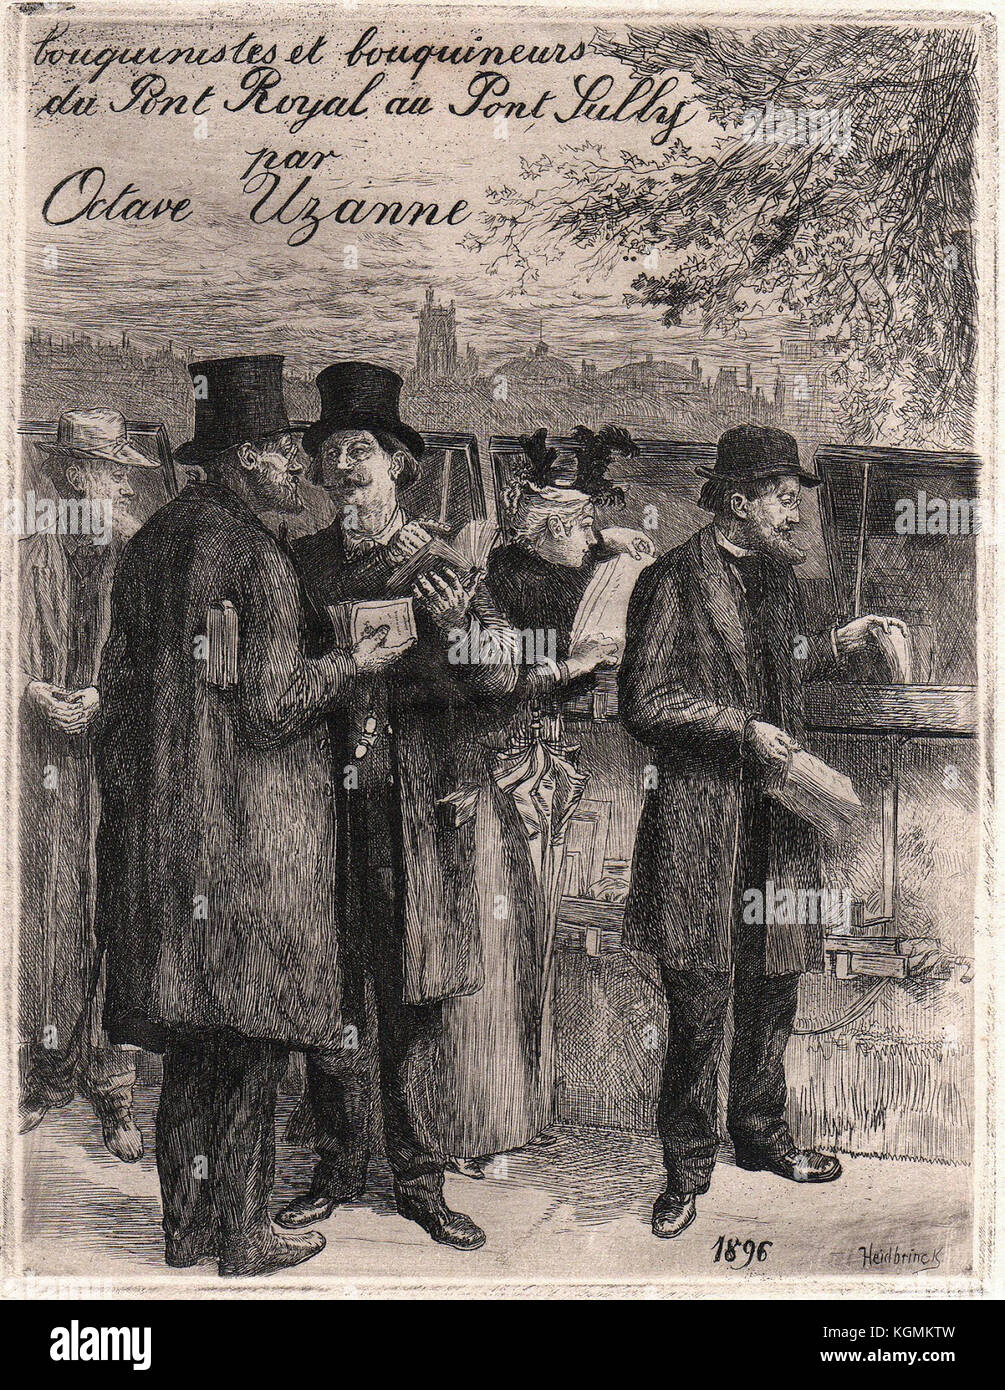 Albert Robida - bouquinistes Parigi 1896 Foto Stock